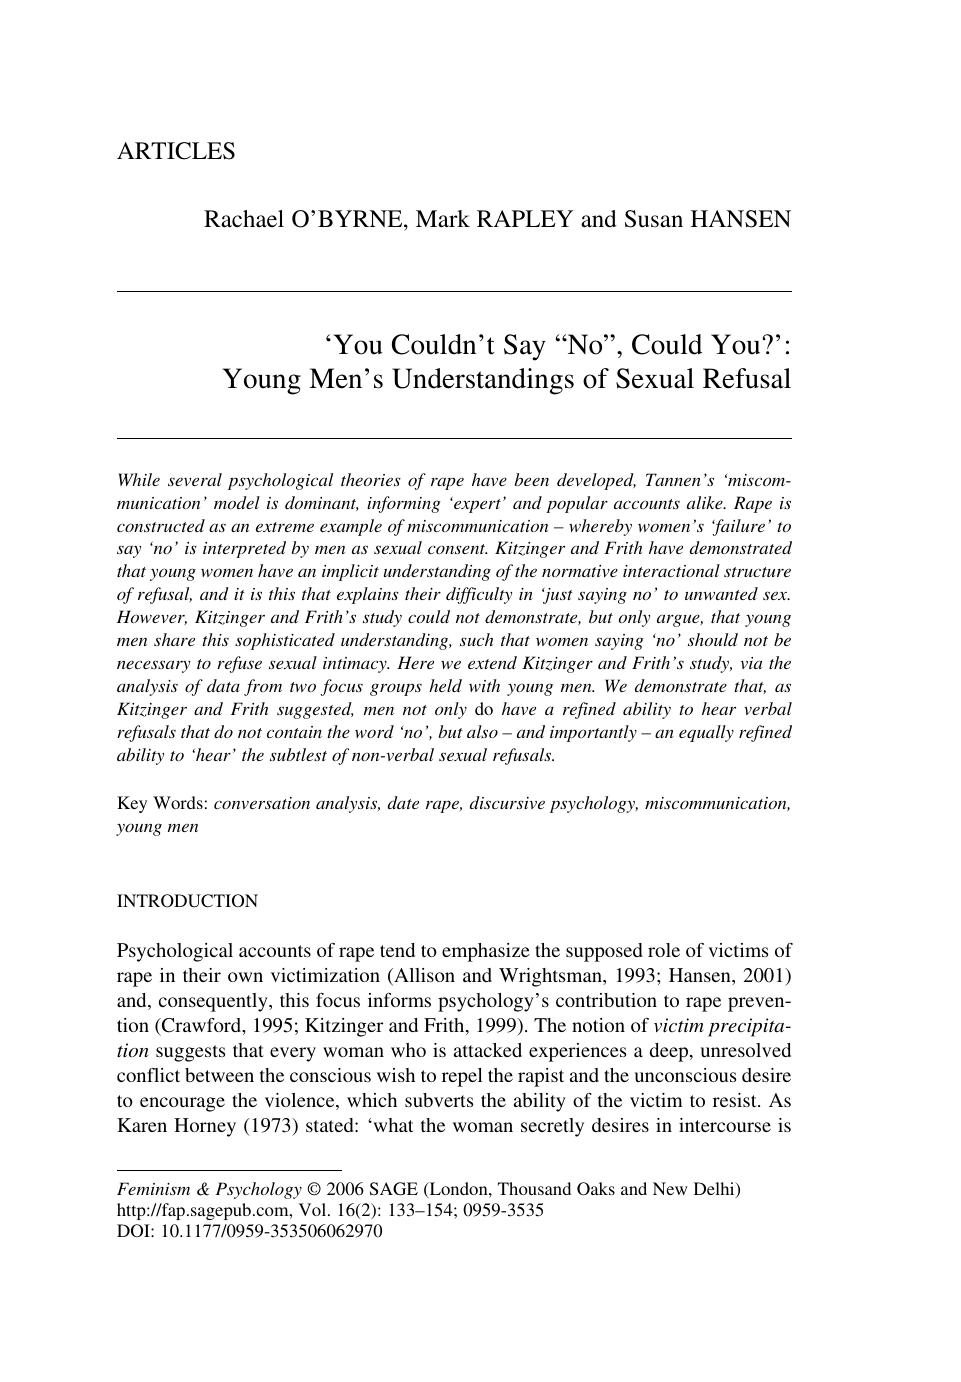 young men's undetstandings of sexual refusal 2006